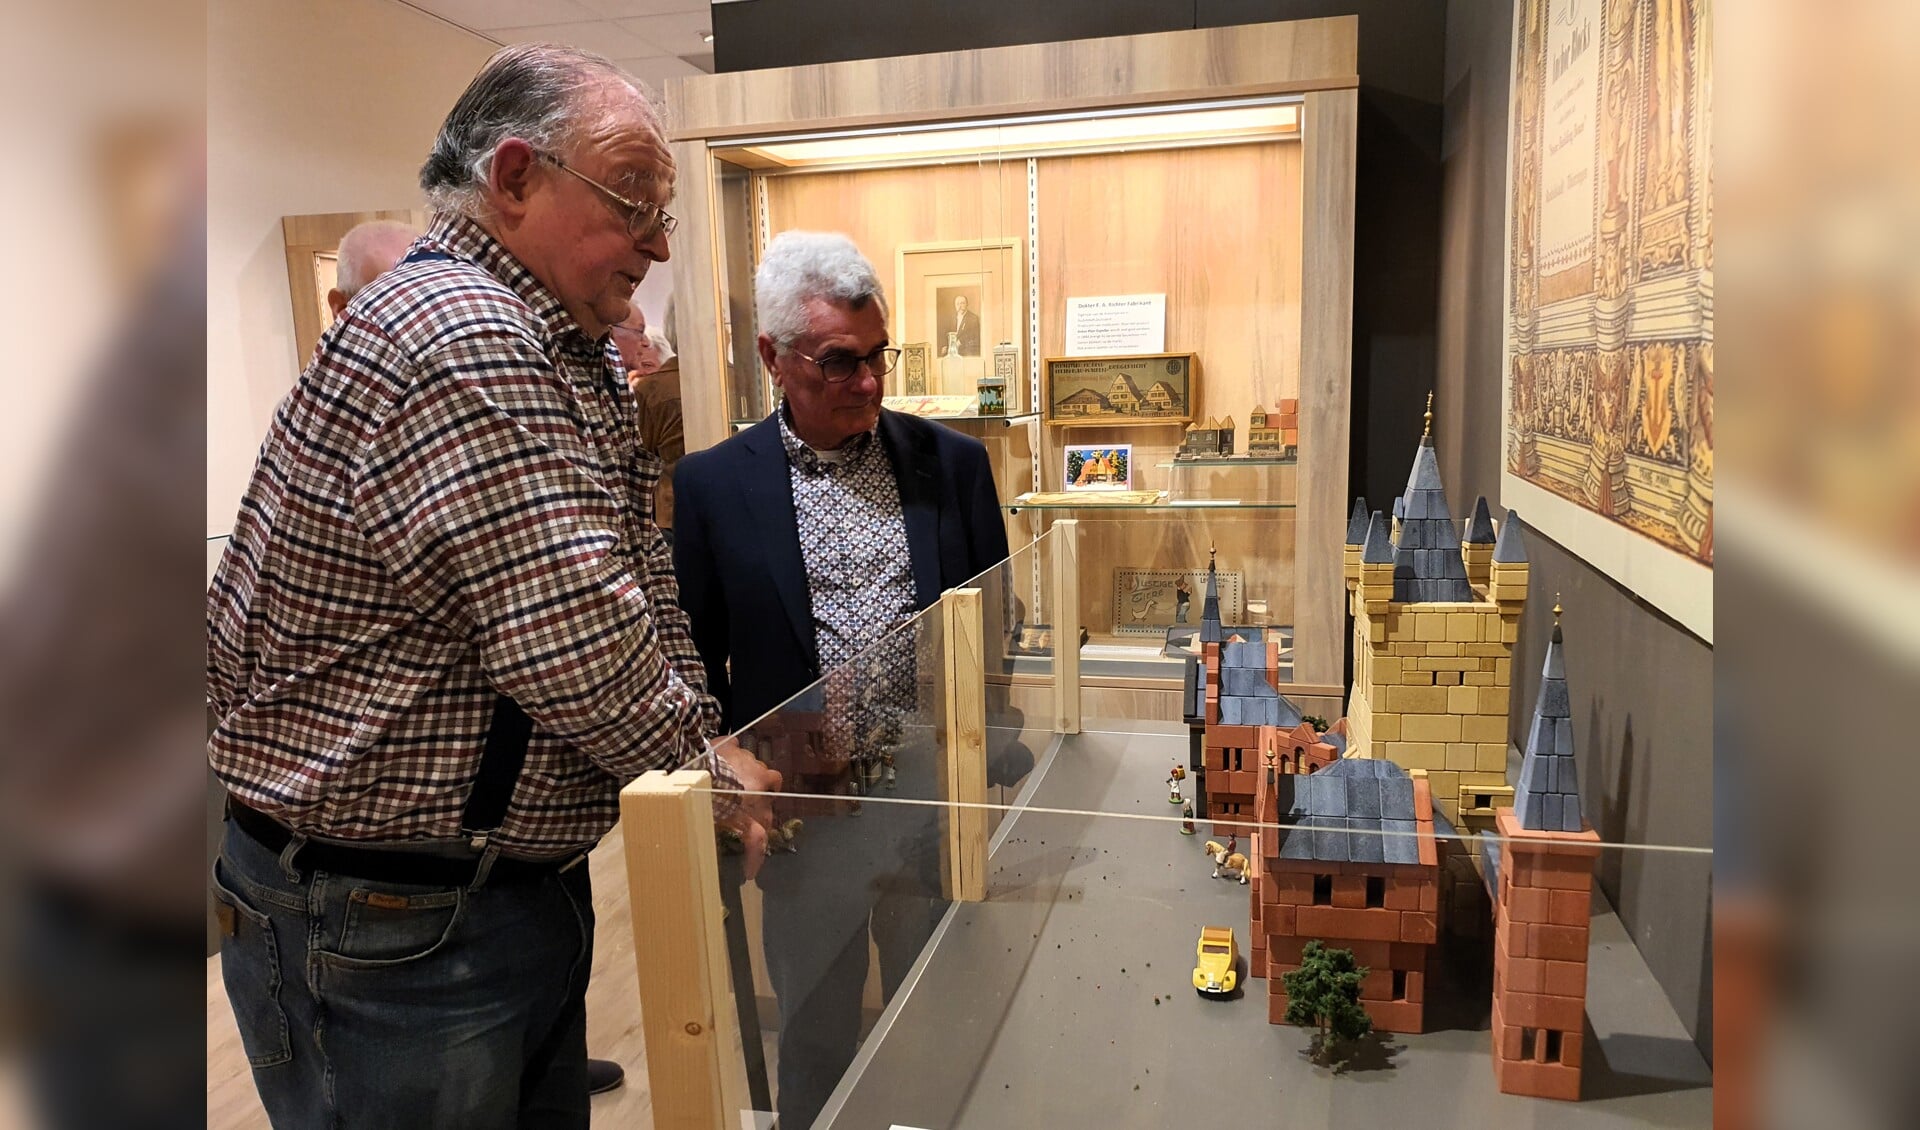 Ad van Swelm (links) geeft uitleg over de Ankerstenen aan de voorzitter van het Kijk en Luistermuseum, Jos van Kroonenburg.